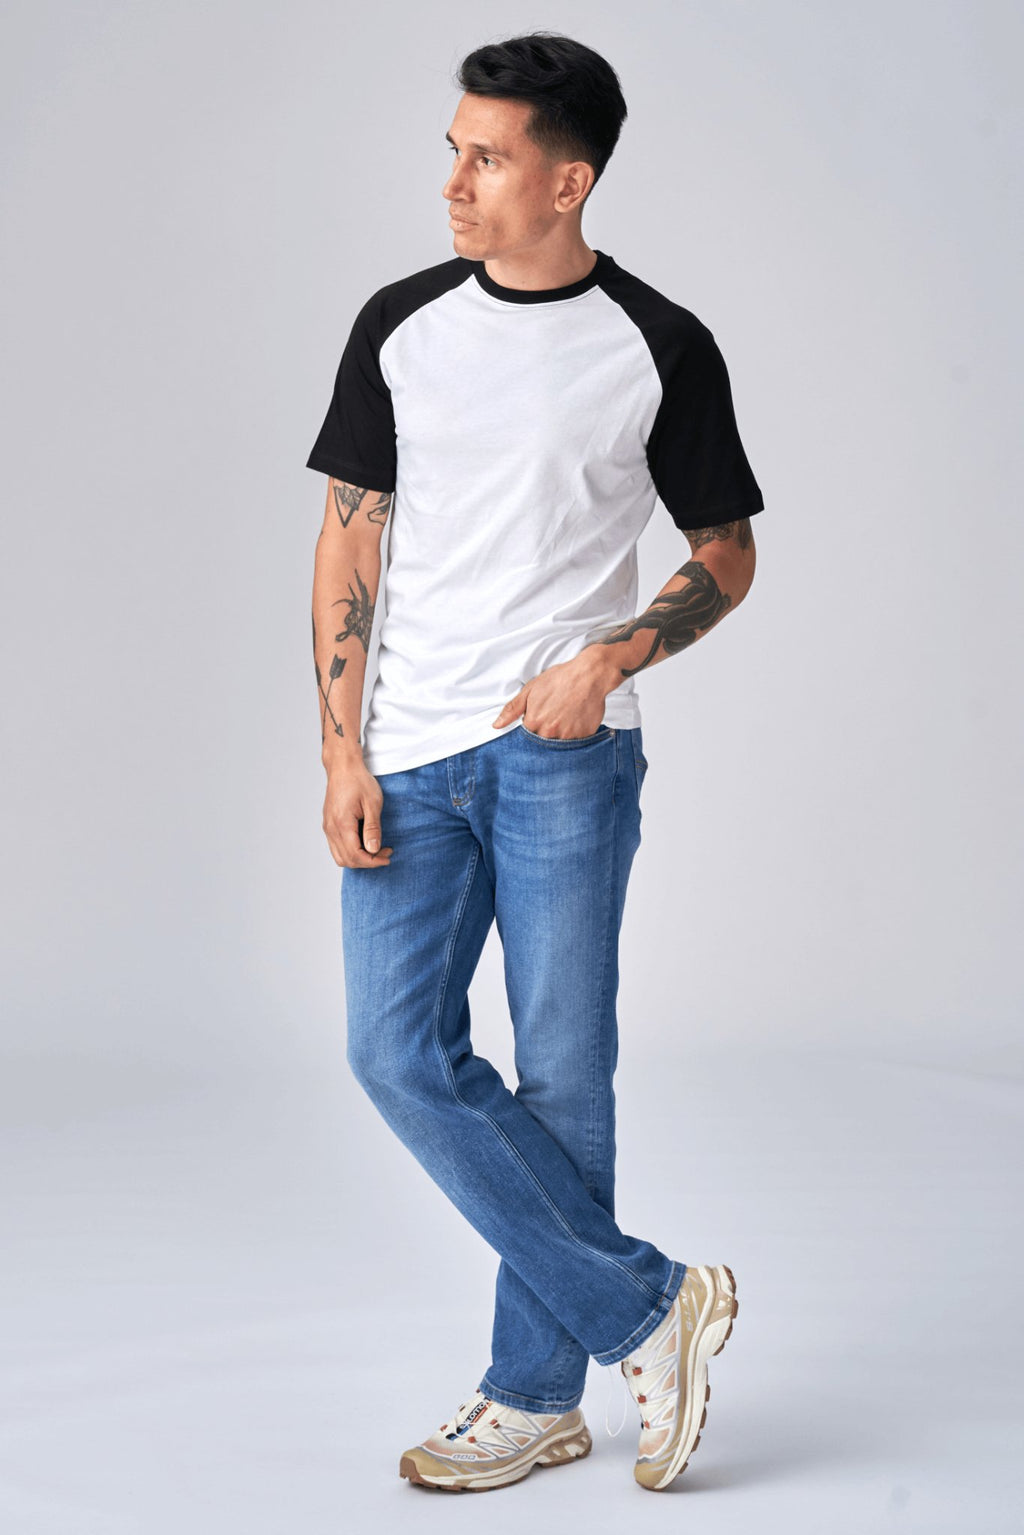 Basic Raglan T -shirt - zwart en wit